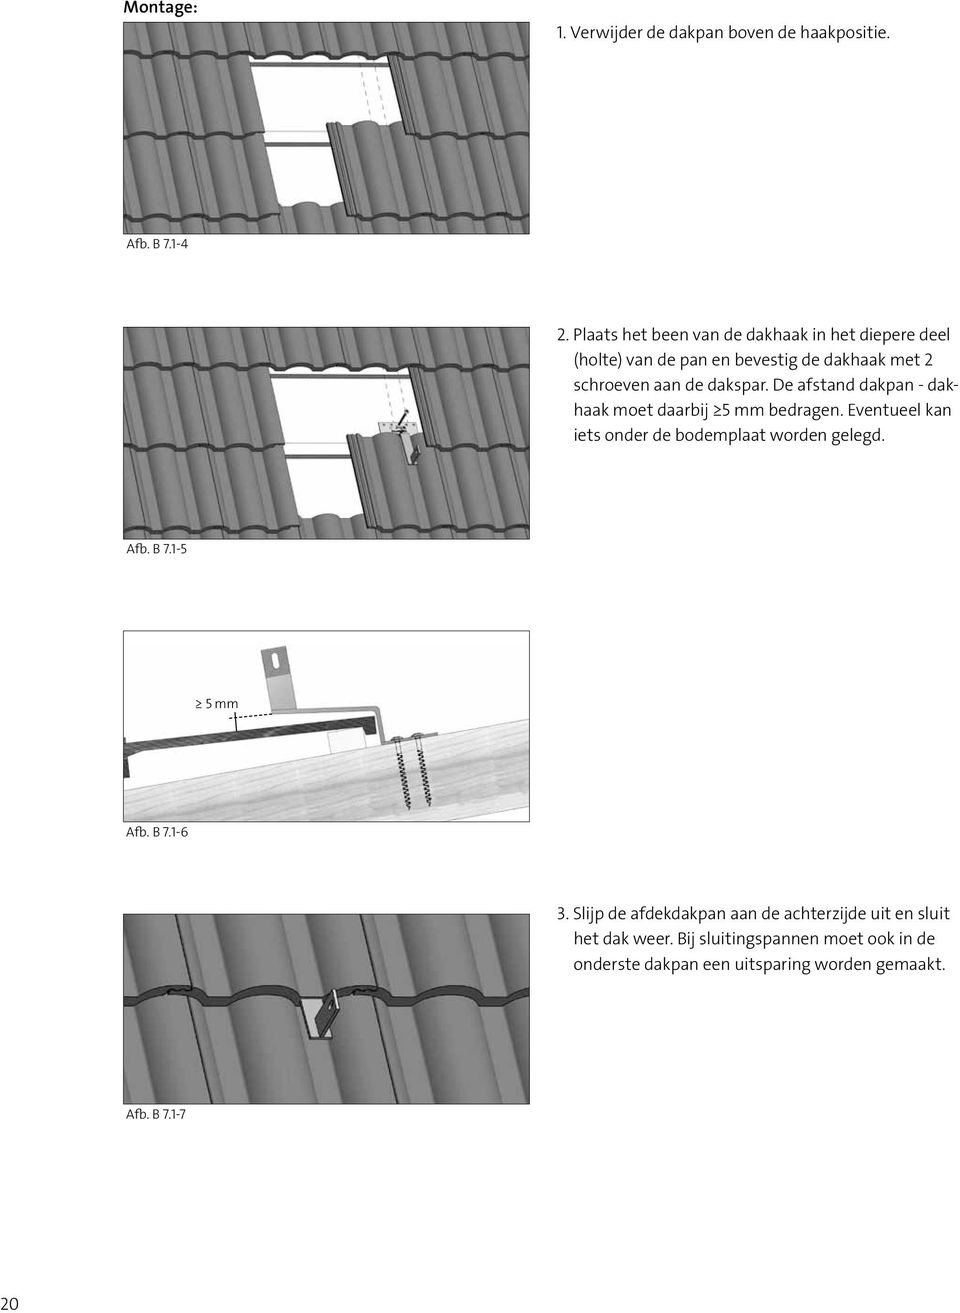 De afstand dakpan - dakhaak moet daarbij 5 mm bedragen. Eventueel kan iets onder de bodemplaat worden gelegd. Afb. B 7.